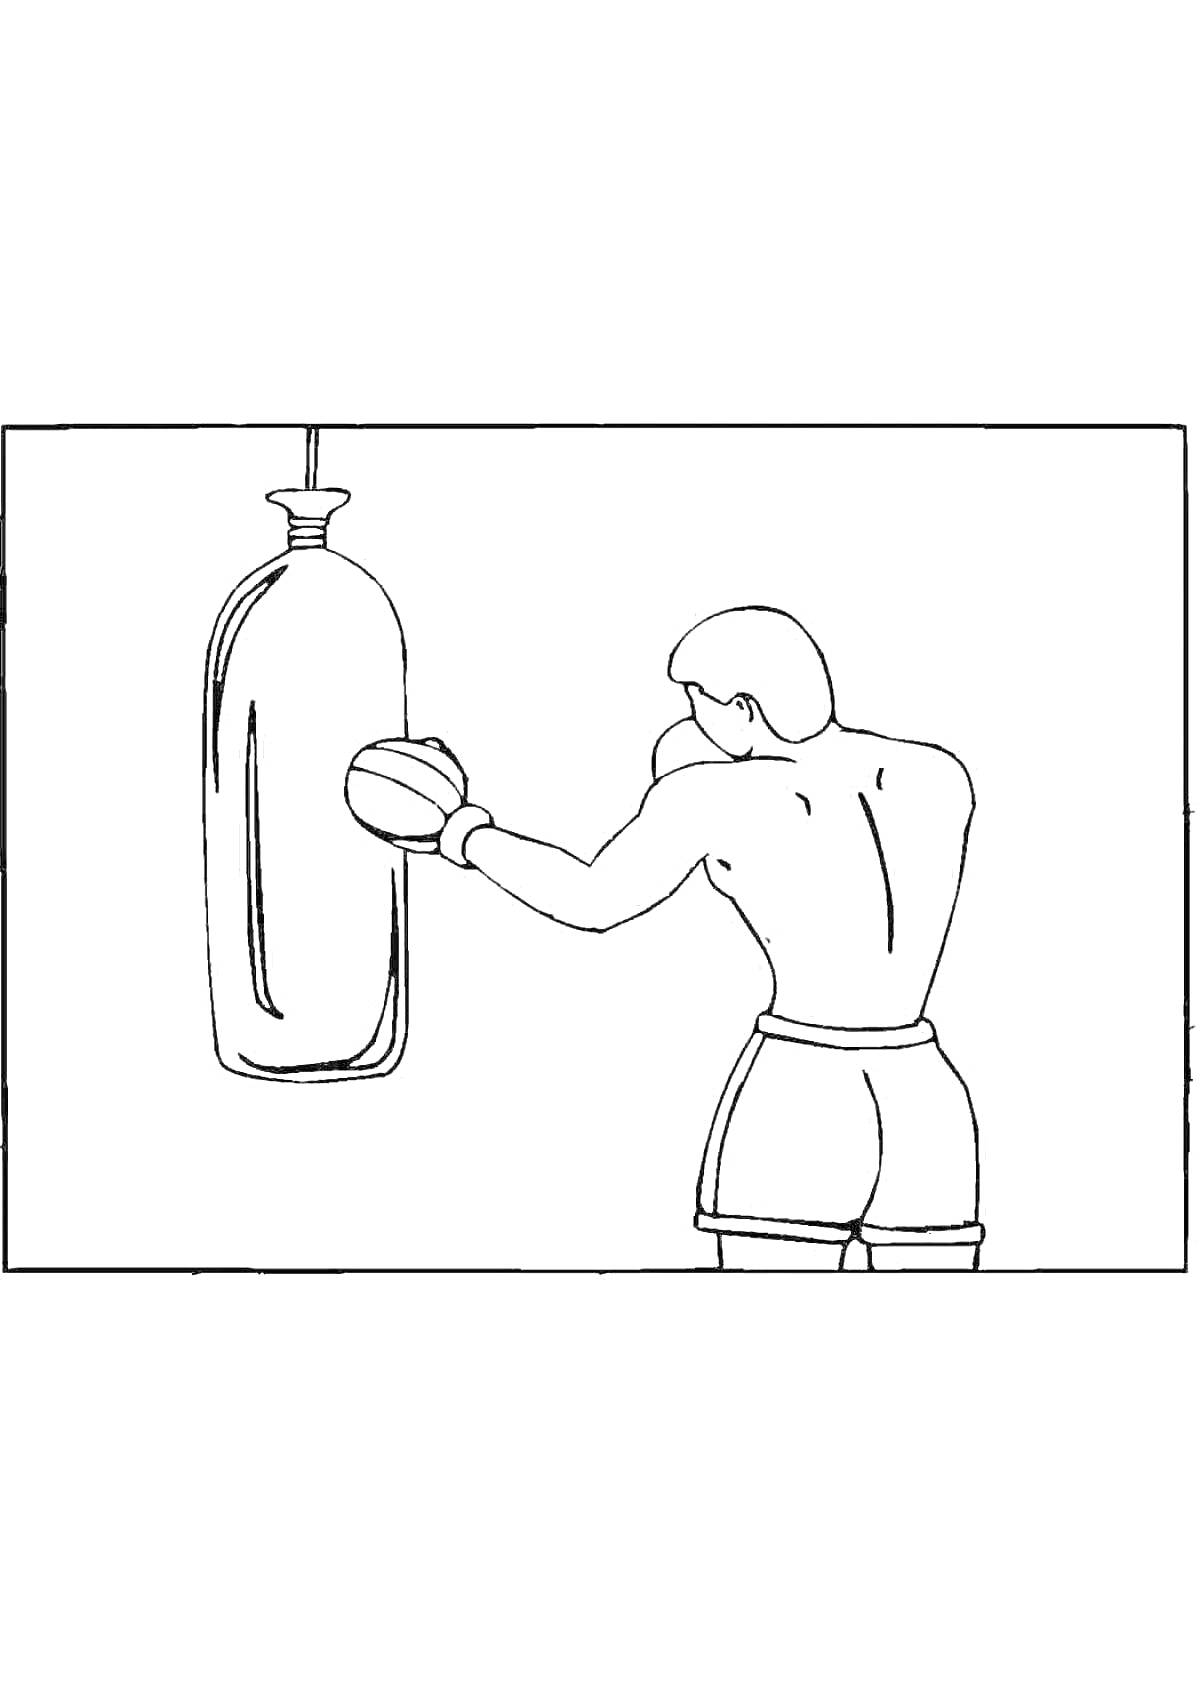 Раскраска Человек в боксерских перчатках, бьющий по боксерскому мешку